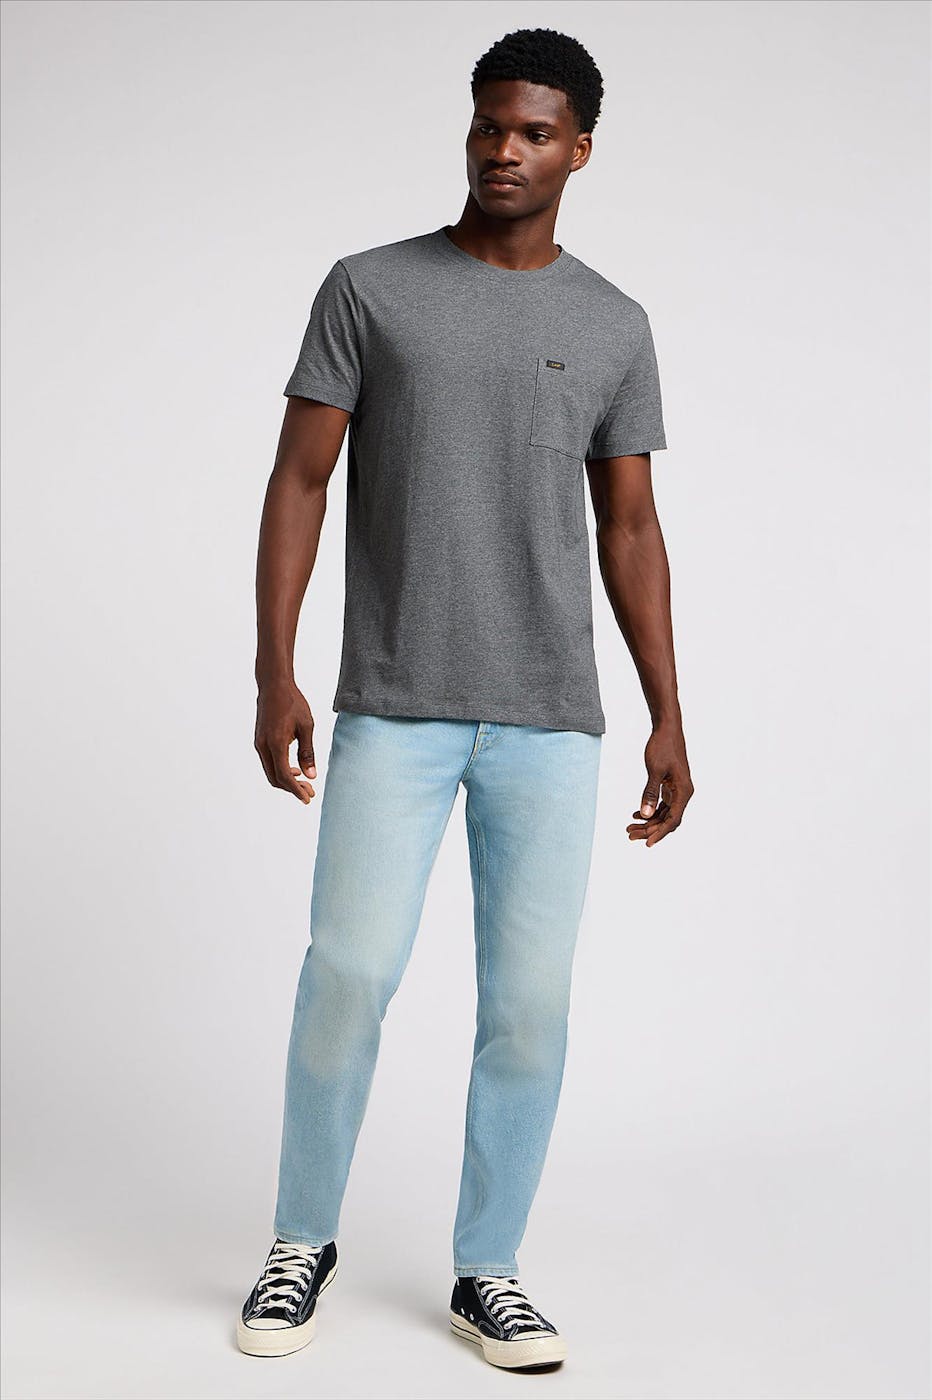 Lee - Lichtblauwe Austin Regular Tapered jeans